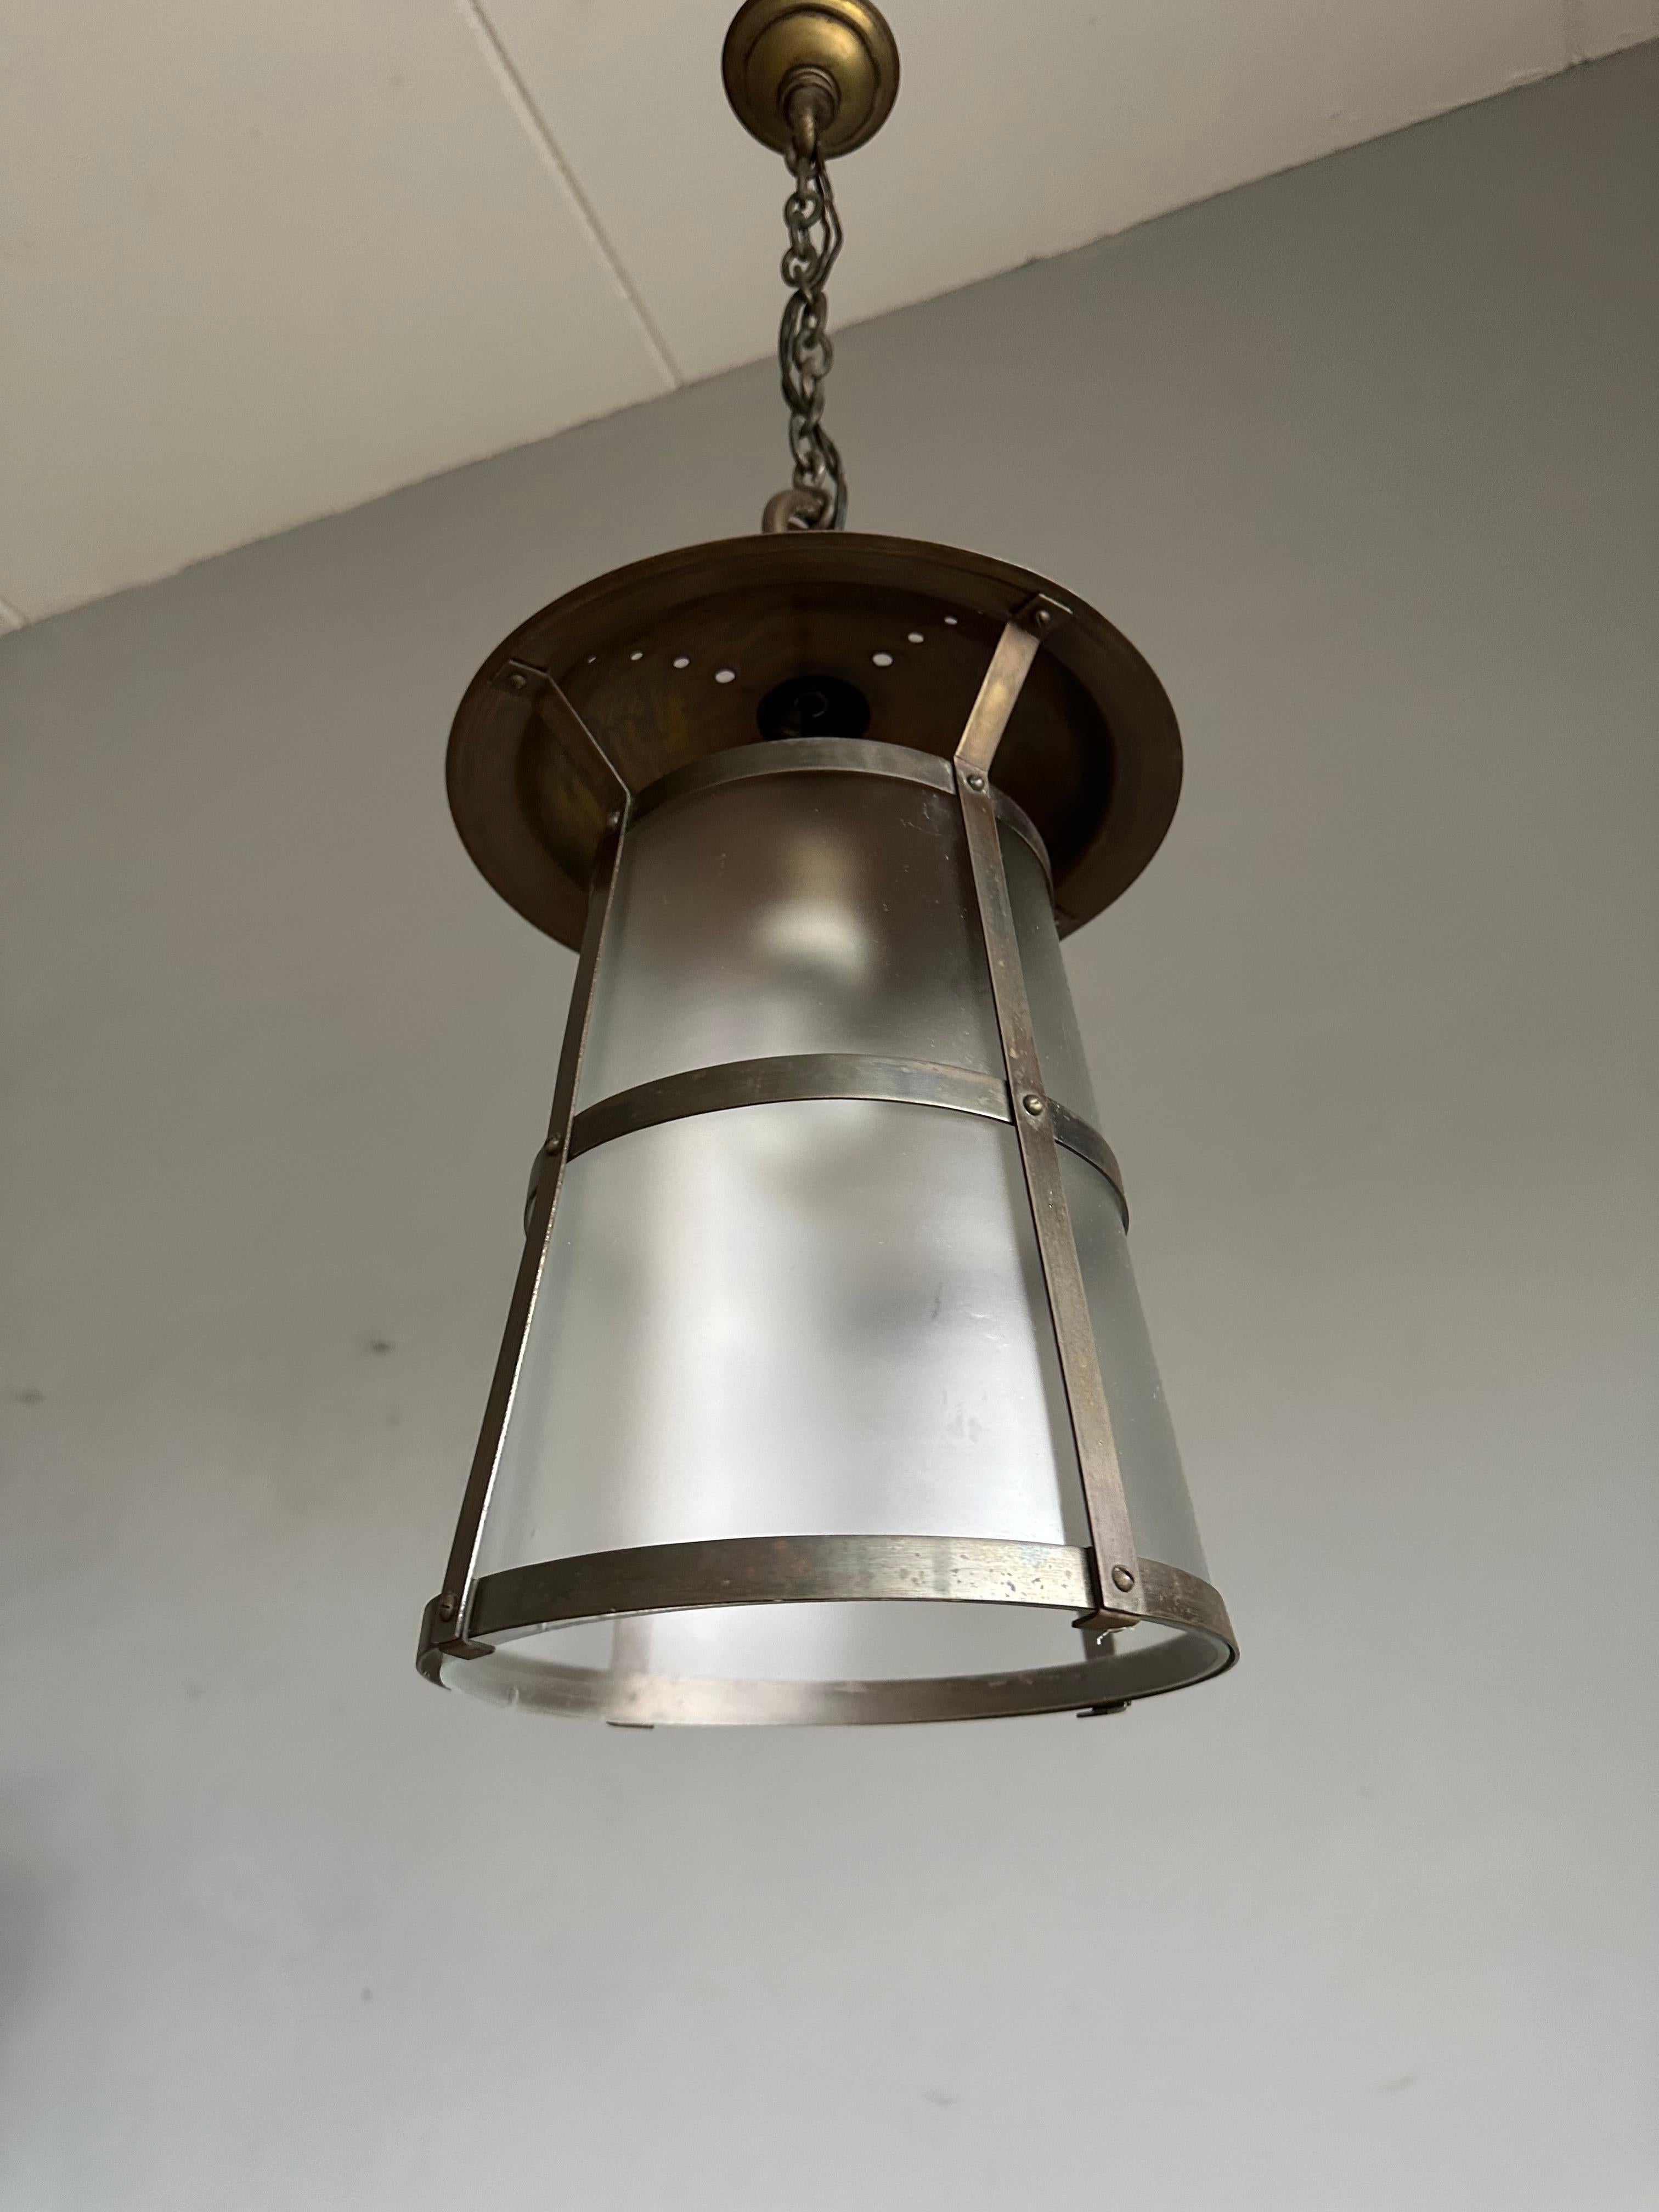 Merveilleuse conception et exécution de la lampe suspendue / lanterne. À la manière de Hendrik Berlage.

Si vous êtes à la recherche d'un luminaire élégant et de qualité pour embellir votre hall d'entrée, votre palier ou votre chambre à coucher, ce